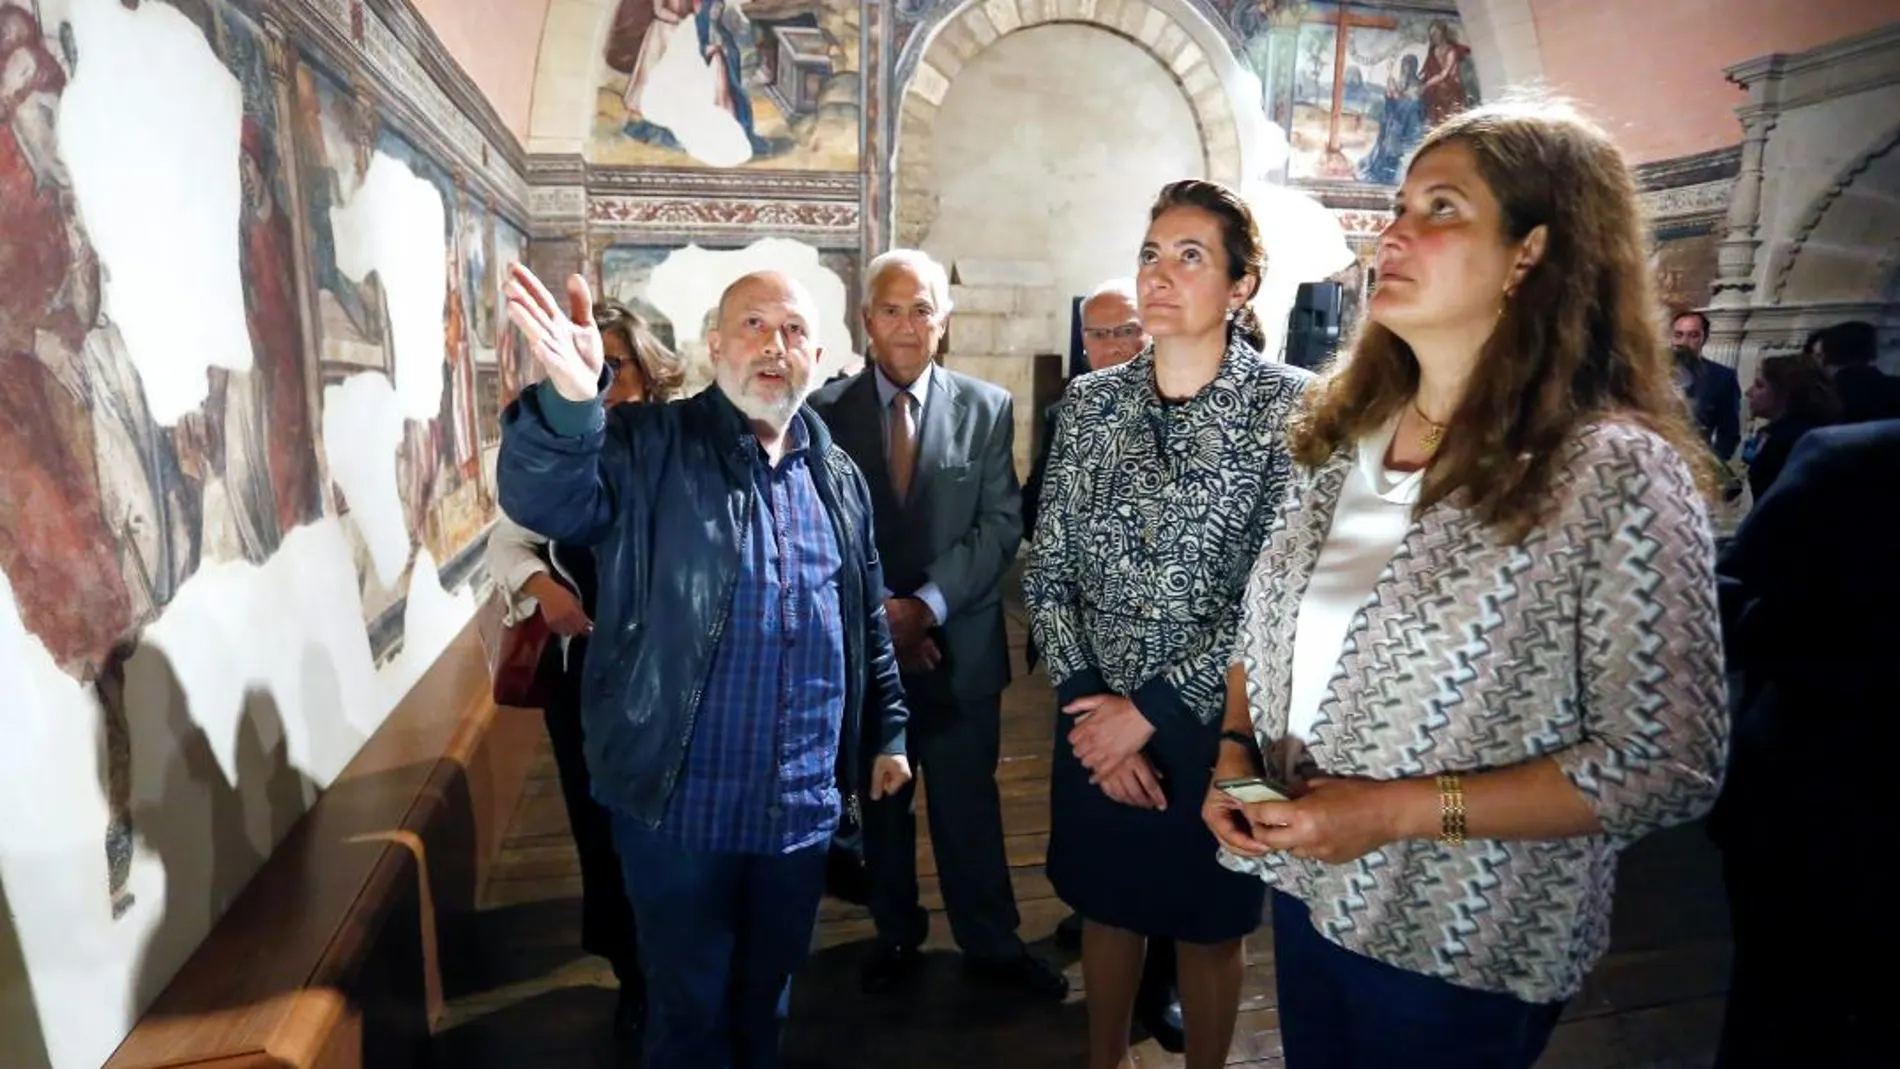 La consejera de Cultura y Turismo, María Josefa García-Cirac, contempla los murales de la Cámara de Doña Sancha en la Colegiata de San Isidoro de León